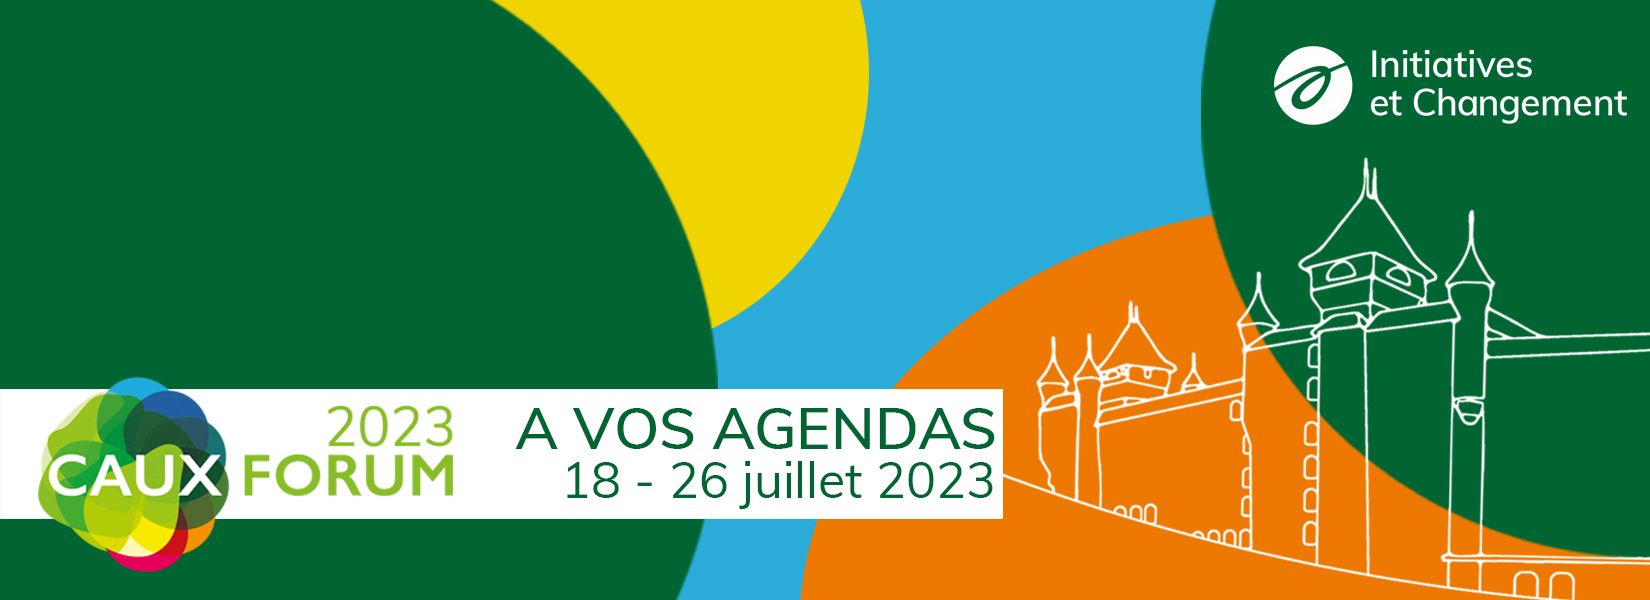 Caux Forum 2023 FR banner